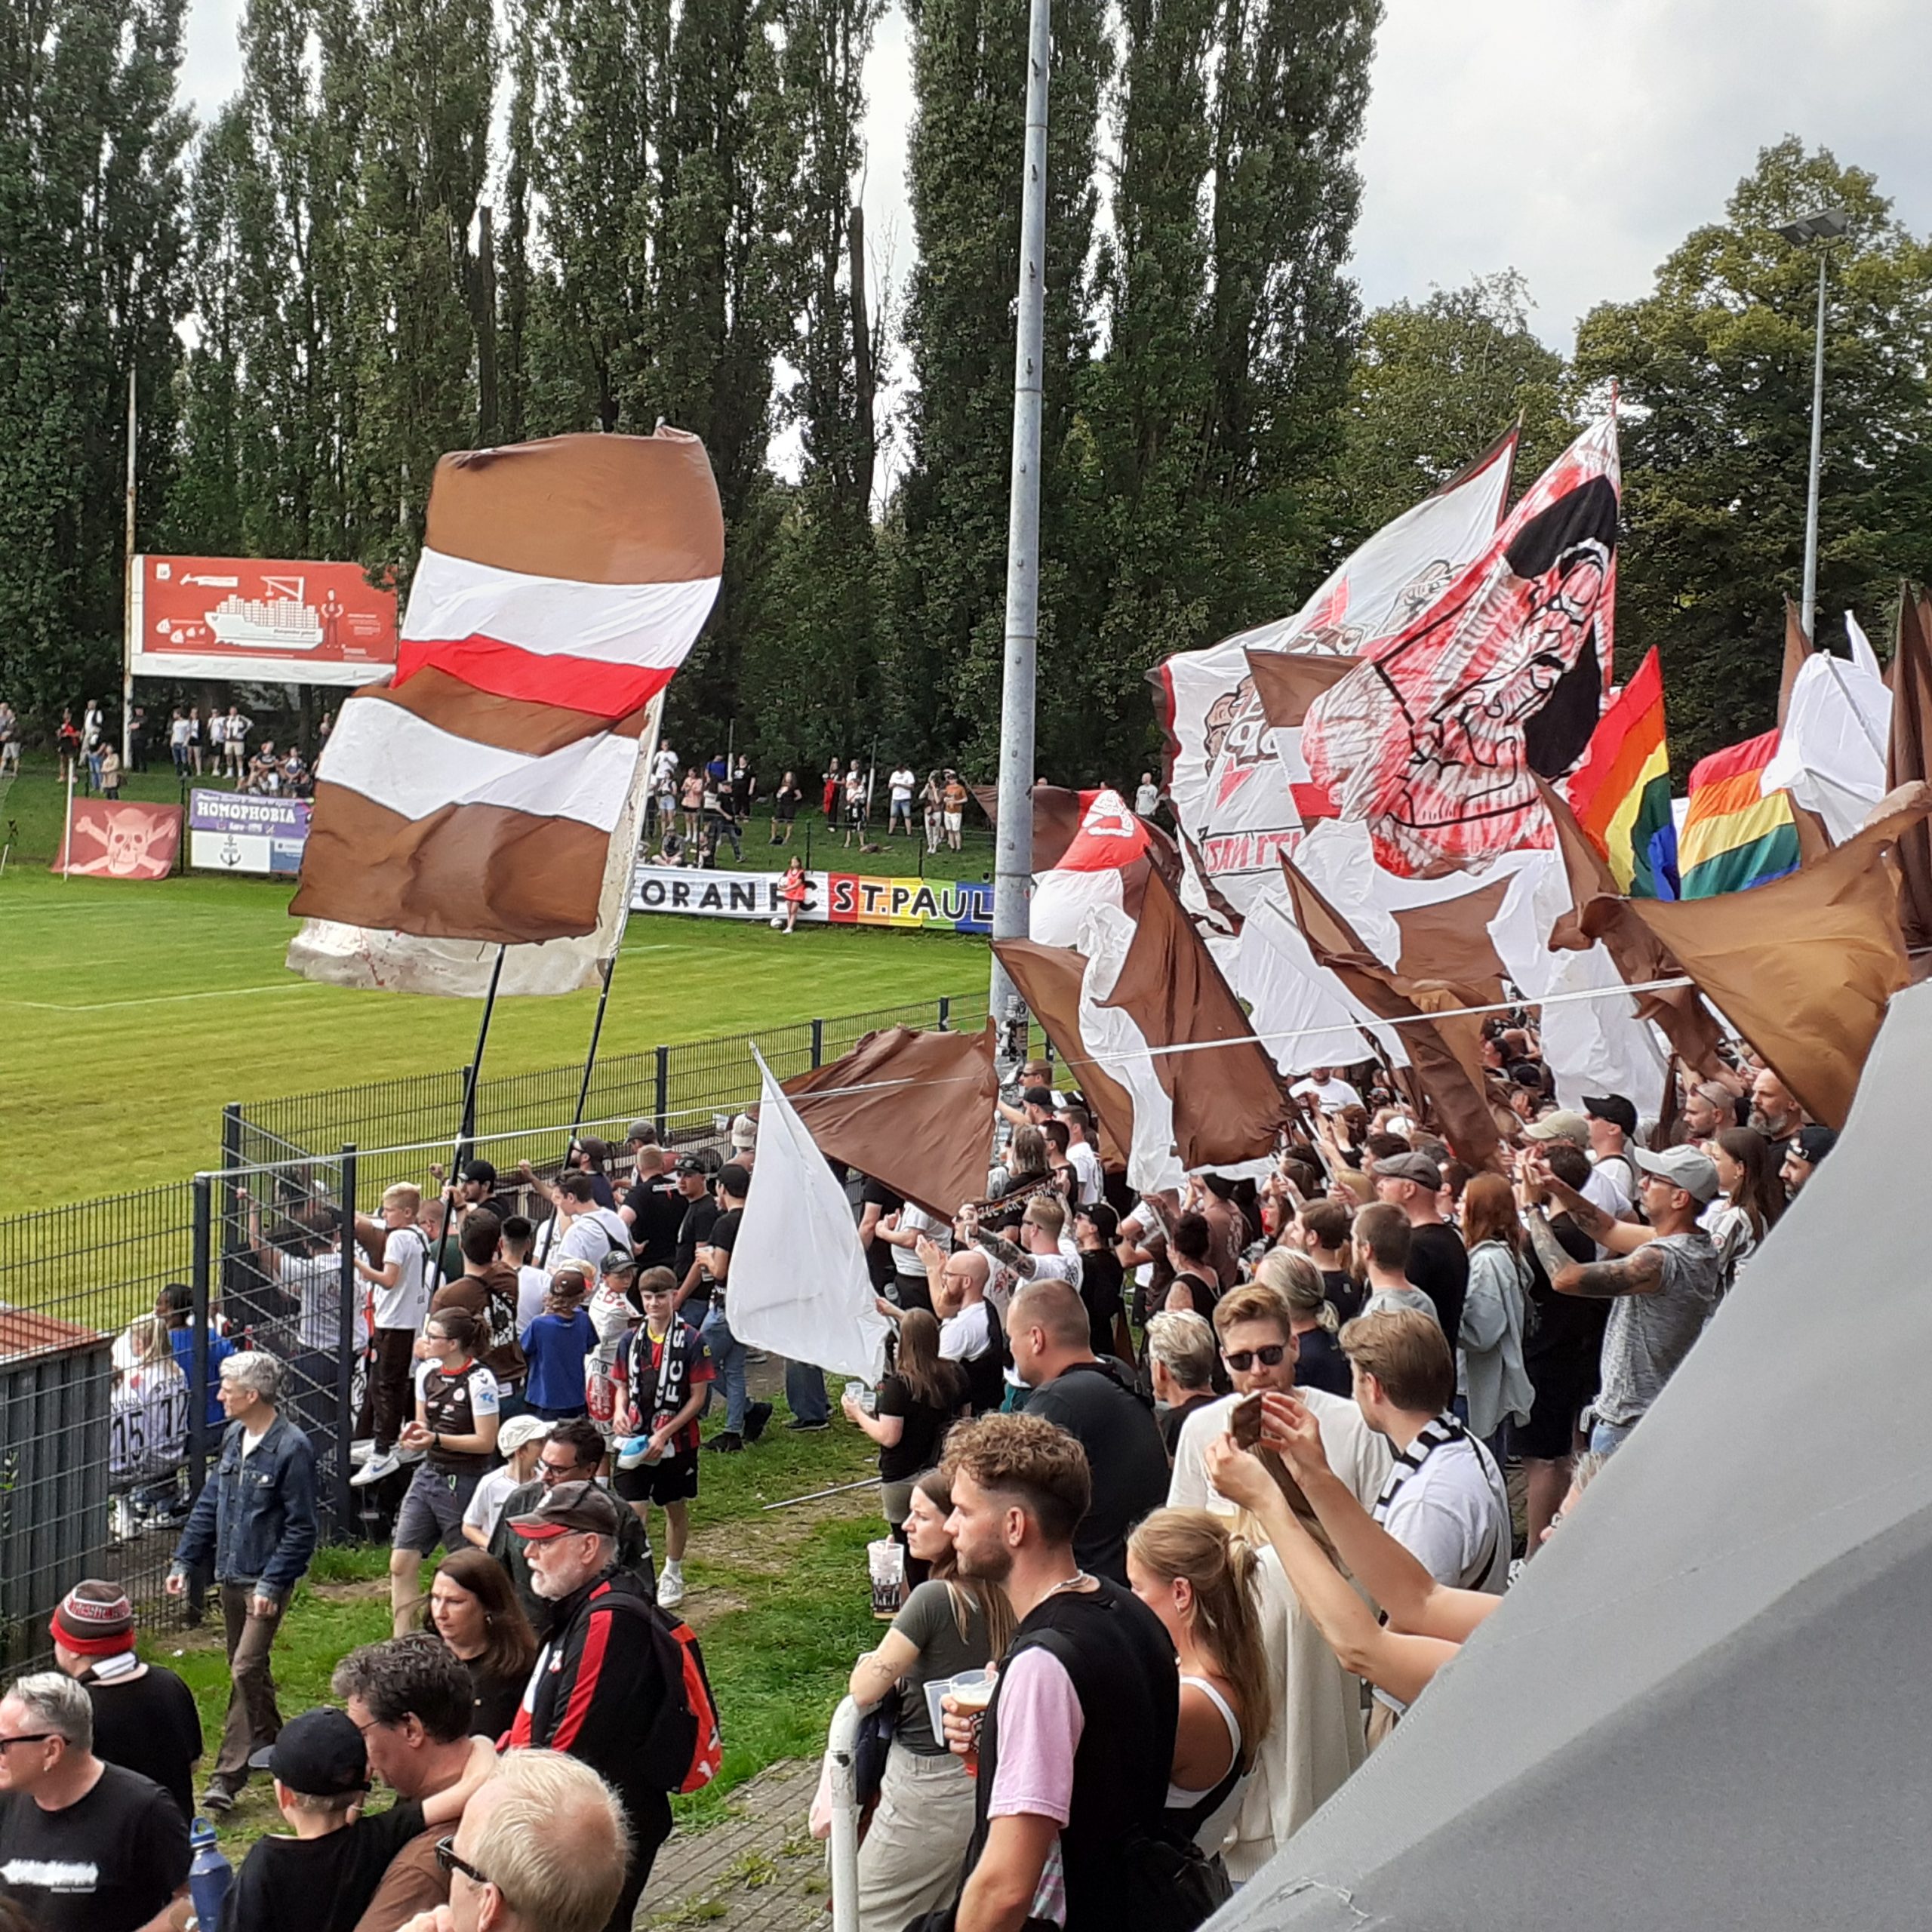 St.Pauli-Heimspielatmosphäre an der Adolf-Jäger-Kampfbahn: Viele St. Pauli Fans mit braun-weißen sowie bunten Fahnen und Bannern auf den Rängen.